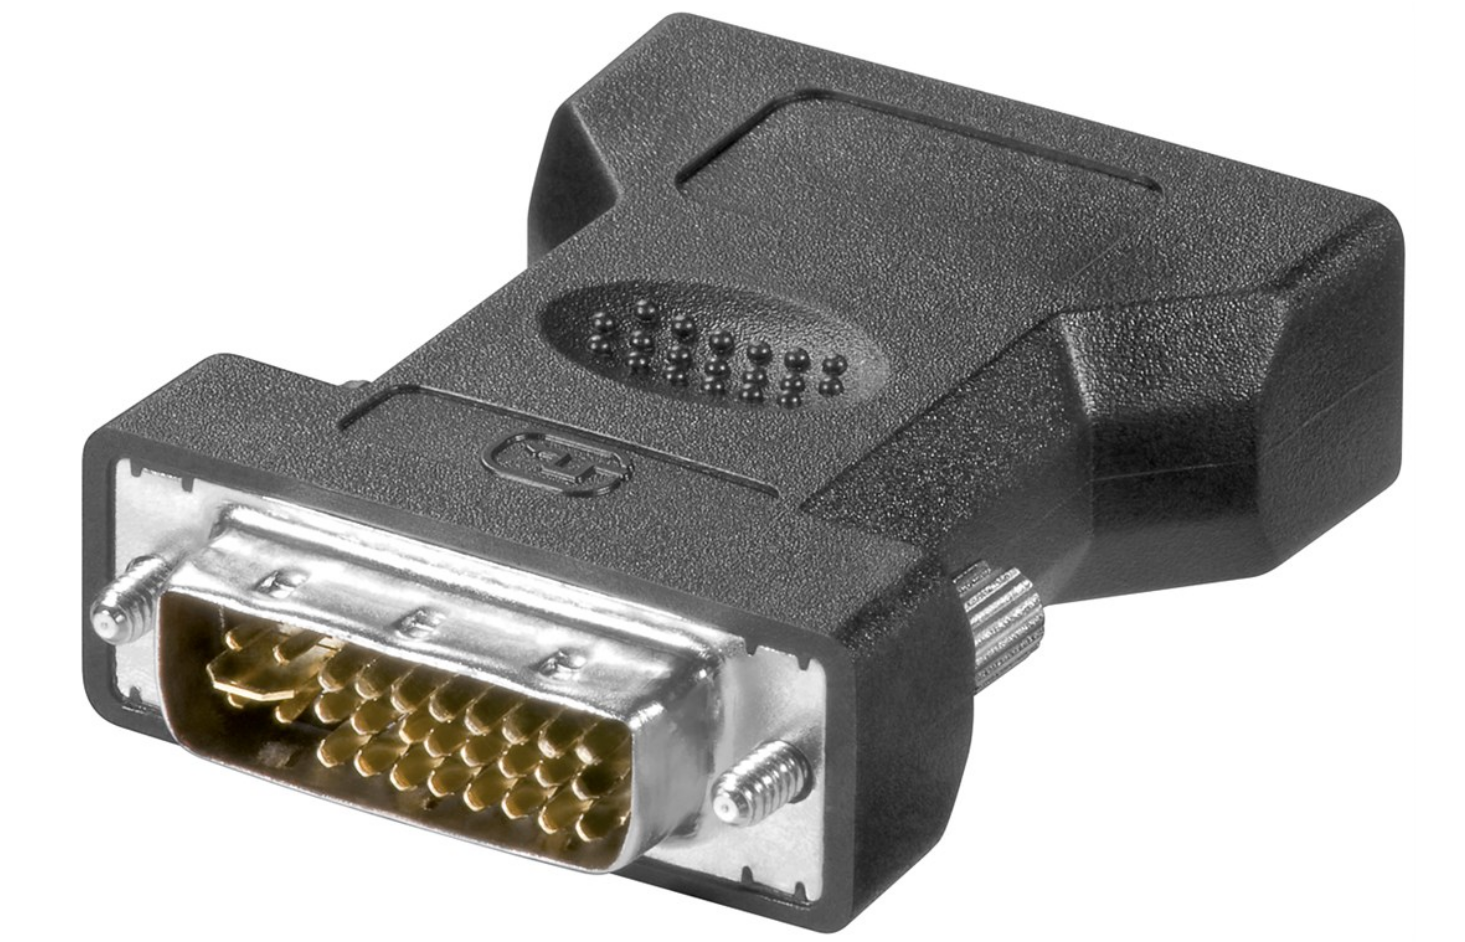 Analoger DVI-I/VGA-Adapter, vergoldet